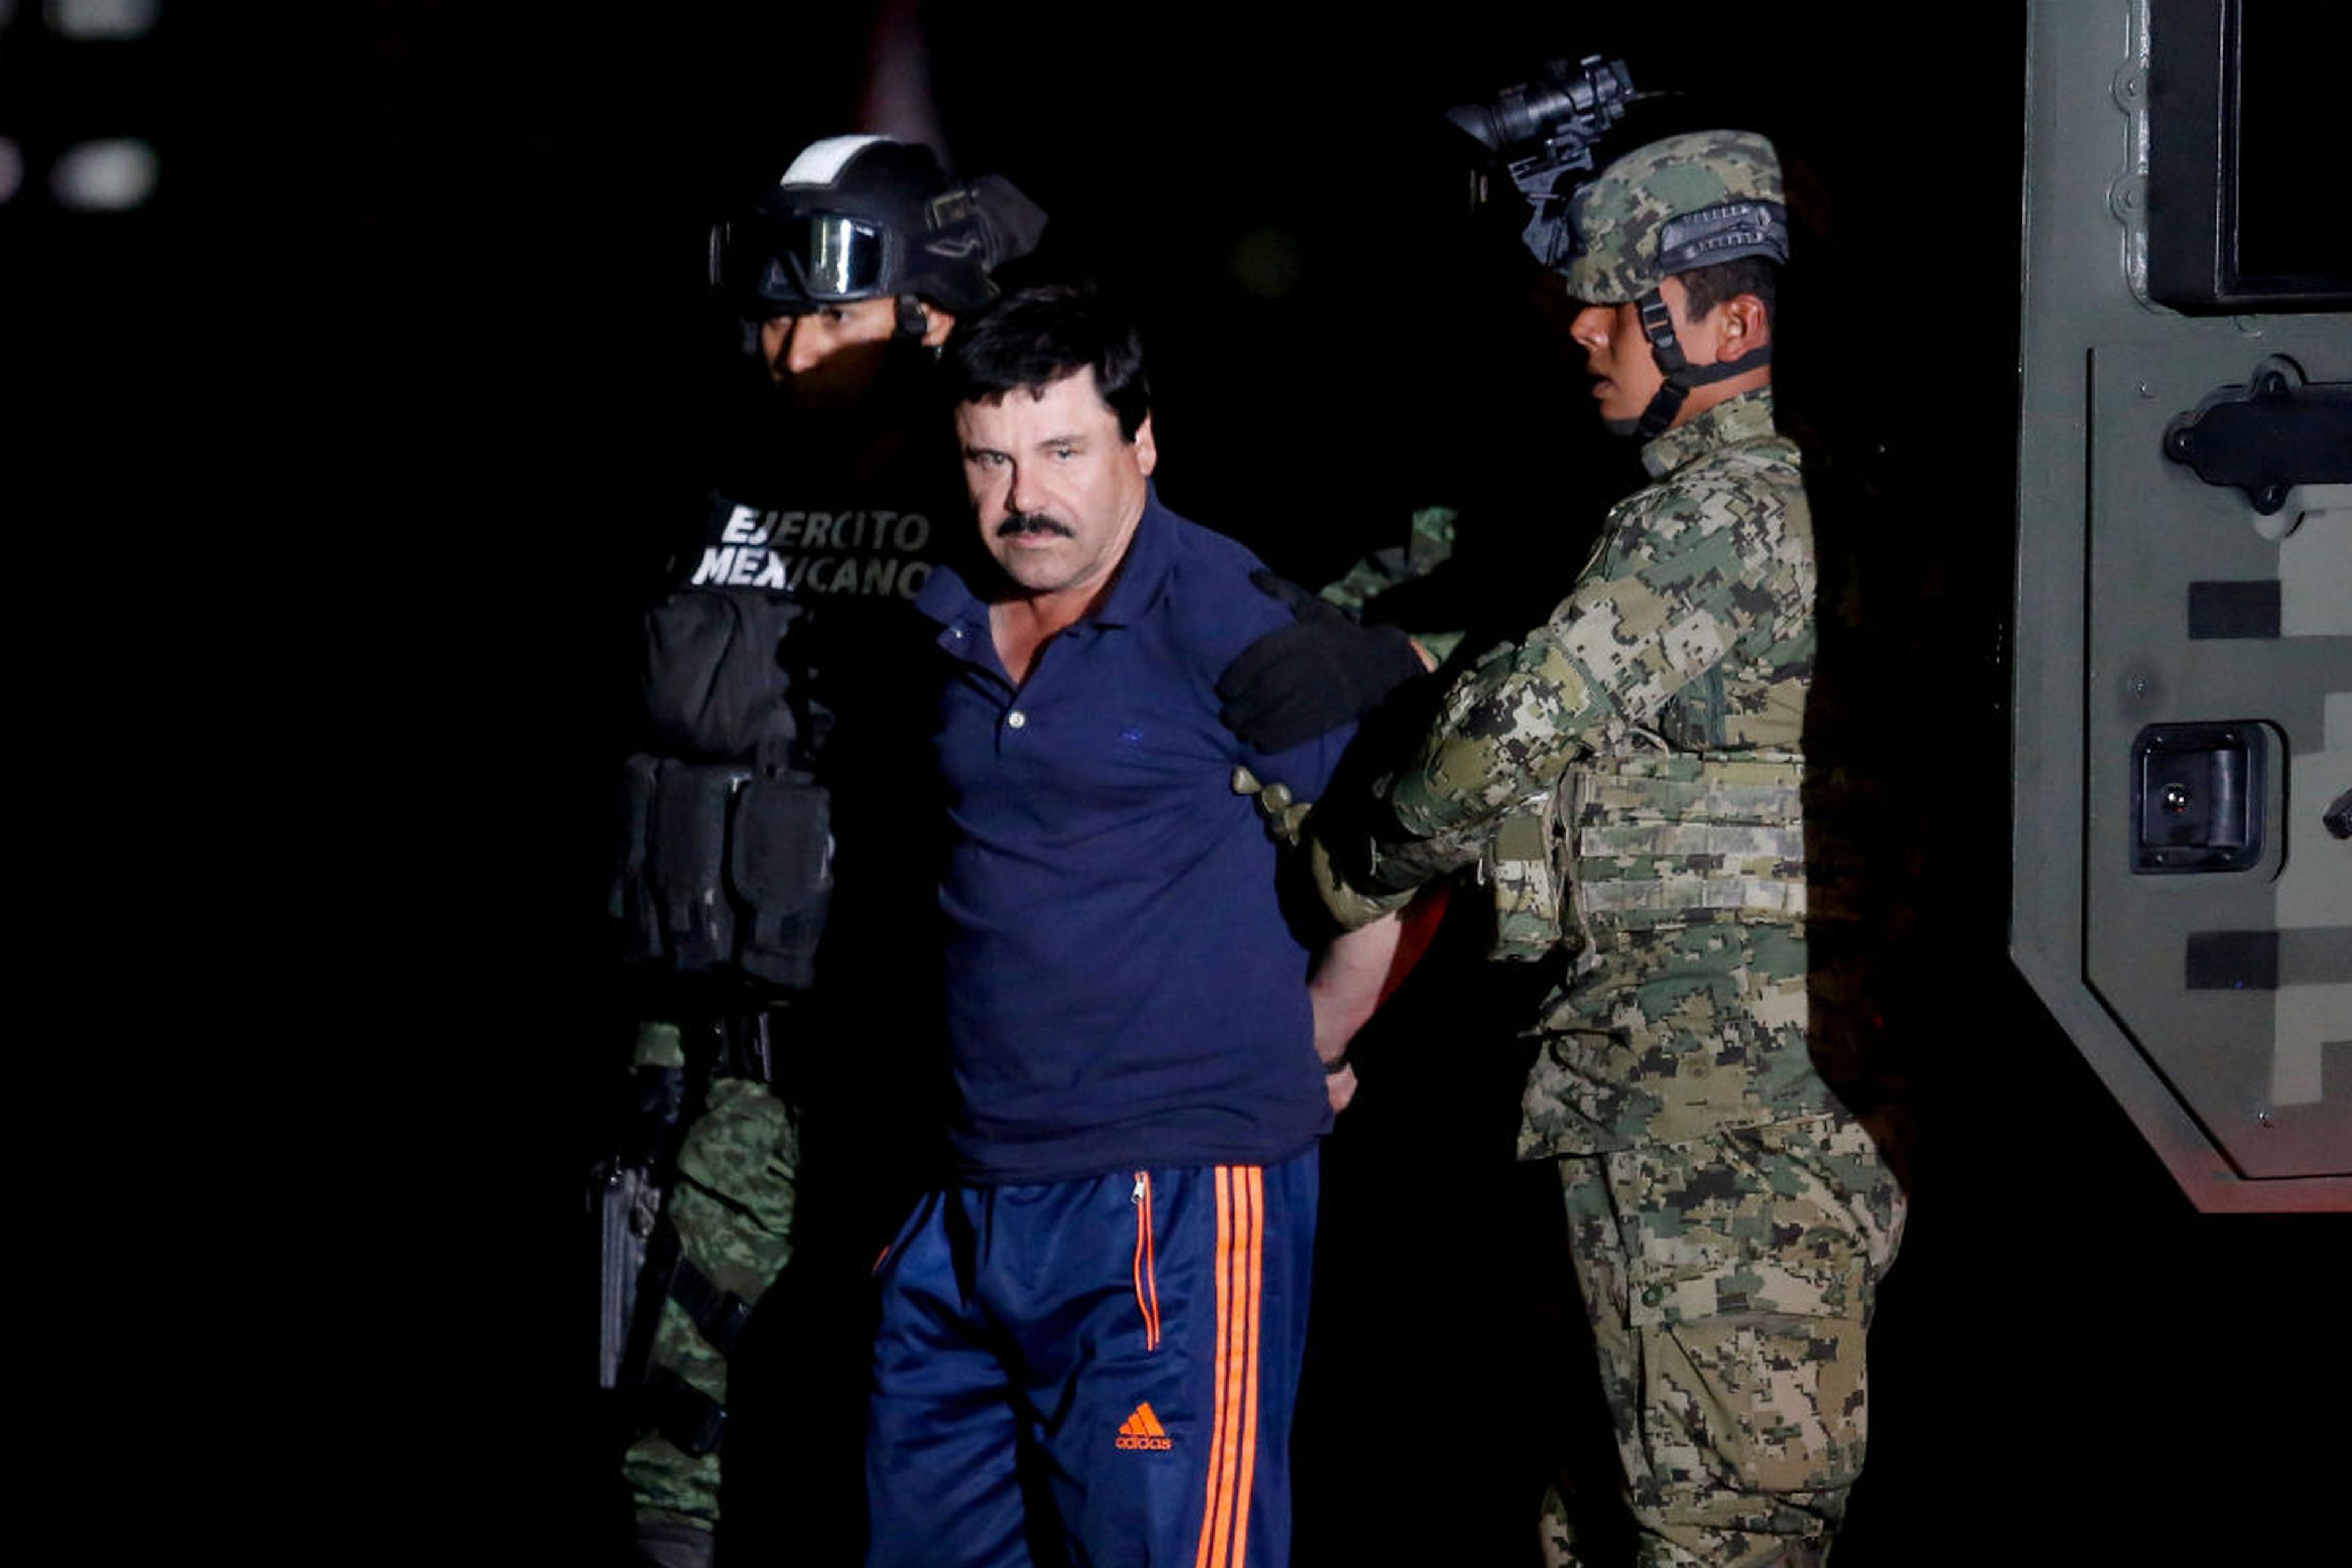 El Chapo Guzmán, en el momento de su arresto